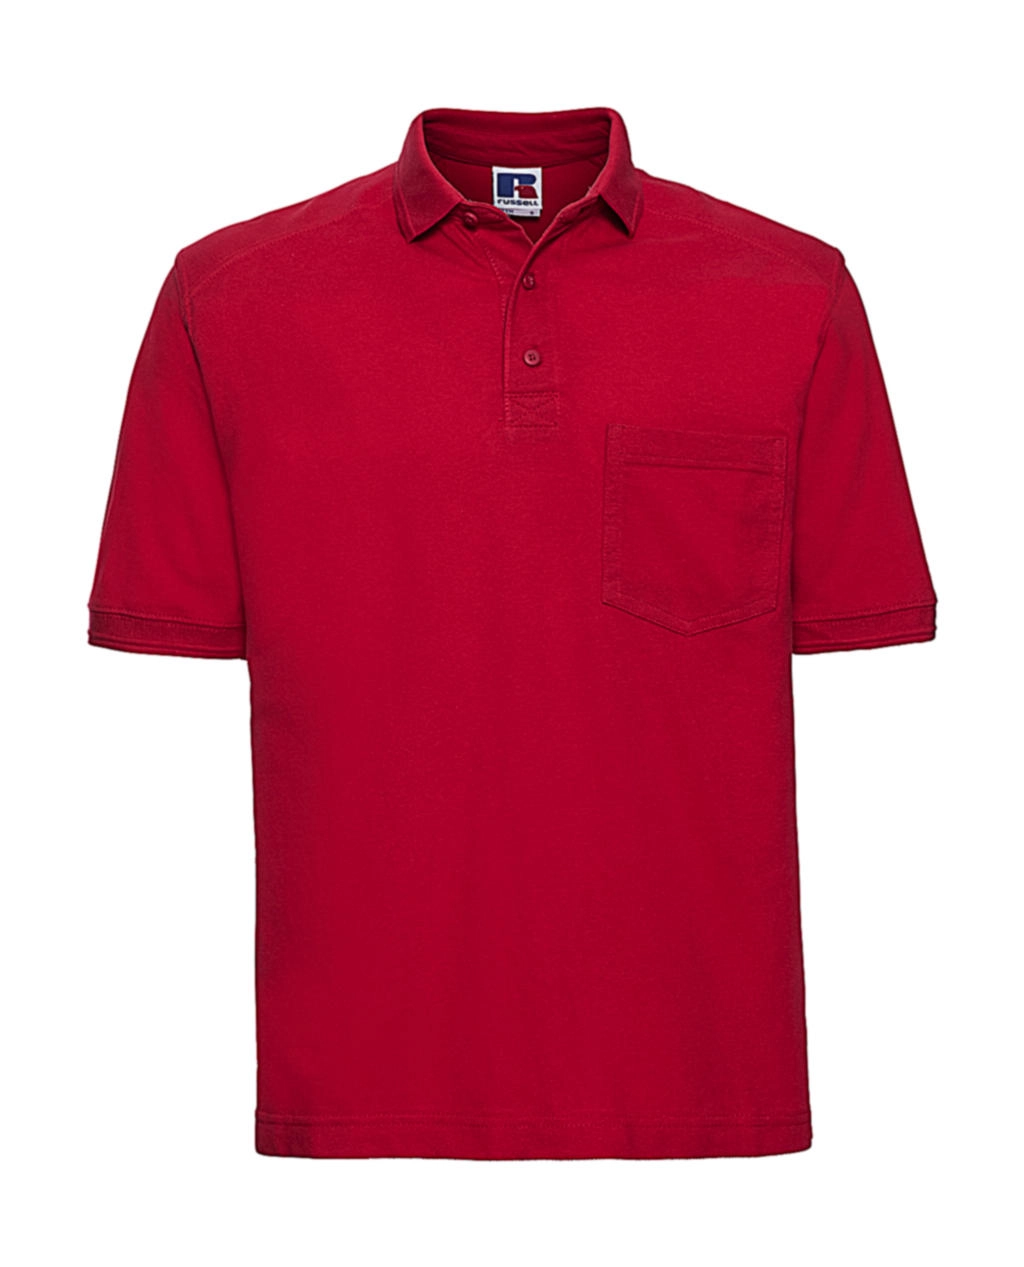 Heavy Duty Workwear Polo zum Besticken und Bedrucken in der Farbe Classic Red mit Ihren Logo, Schriftzug oder Motiv.